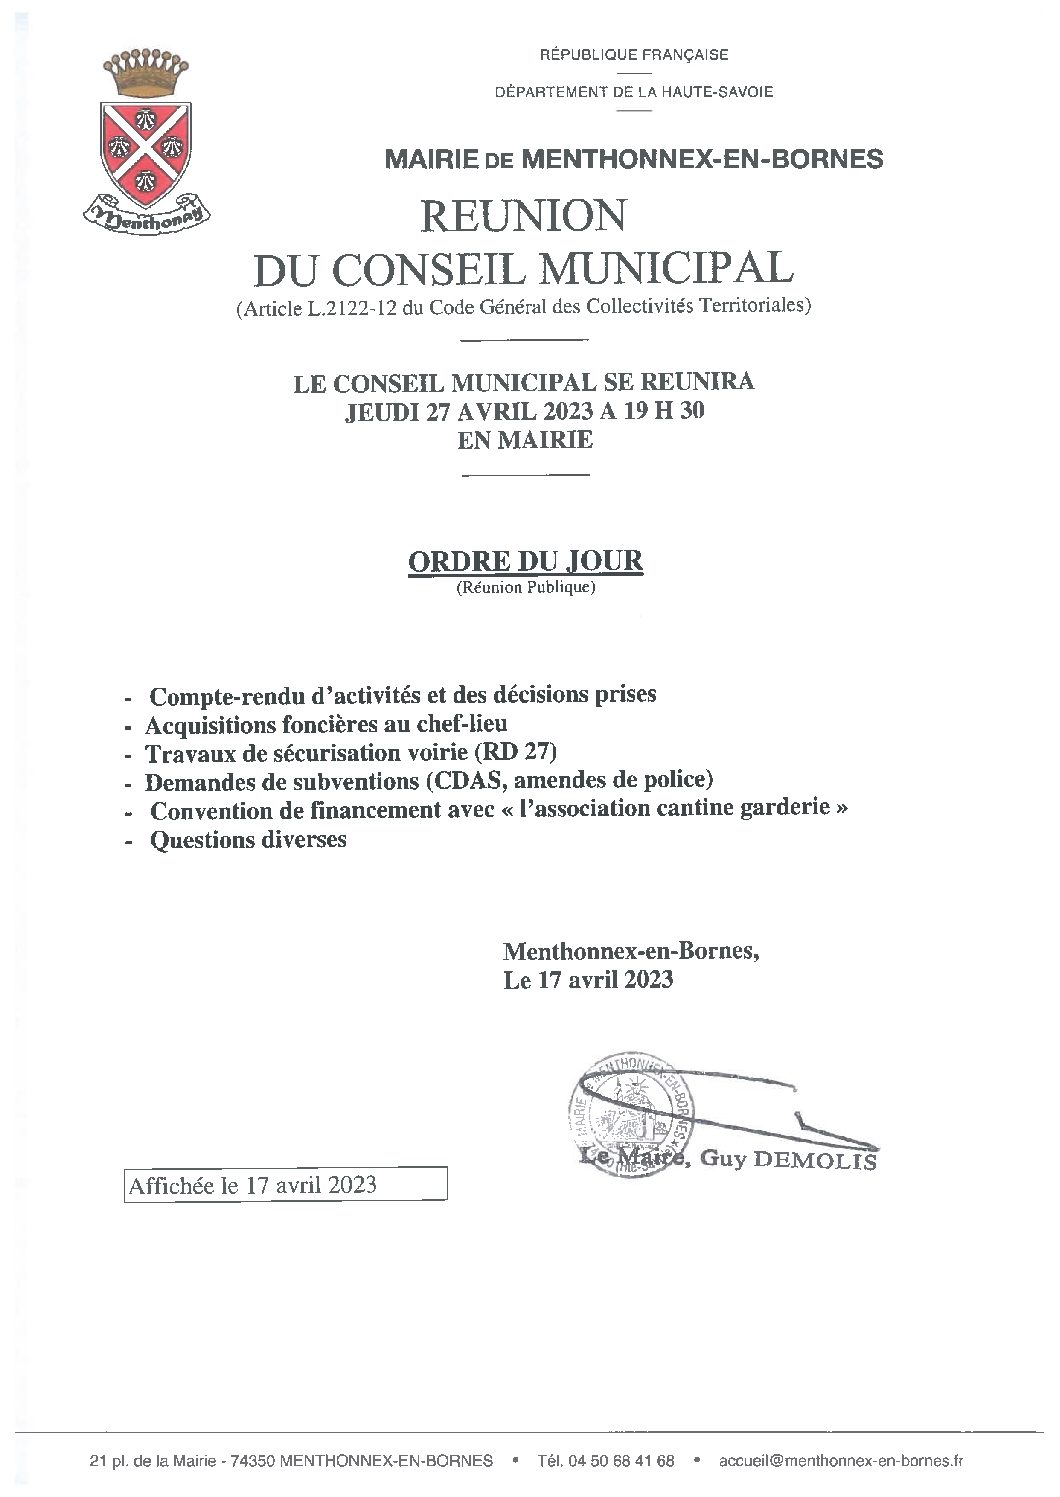 Ordre du jour du conseil municipal du 27 avril 2023